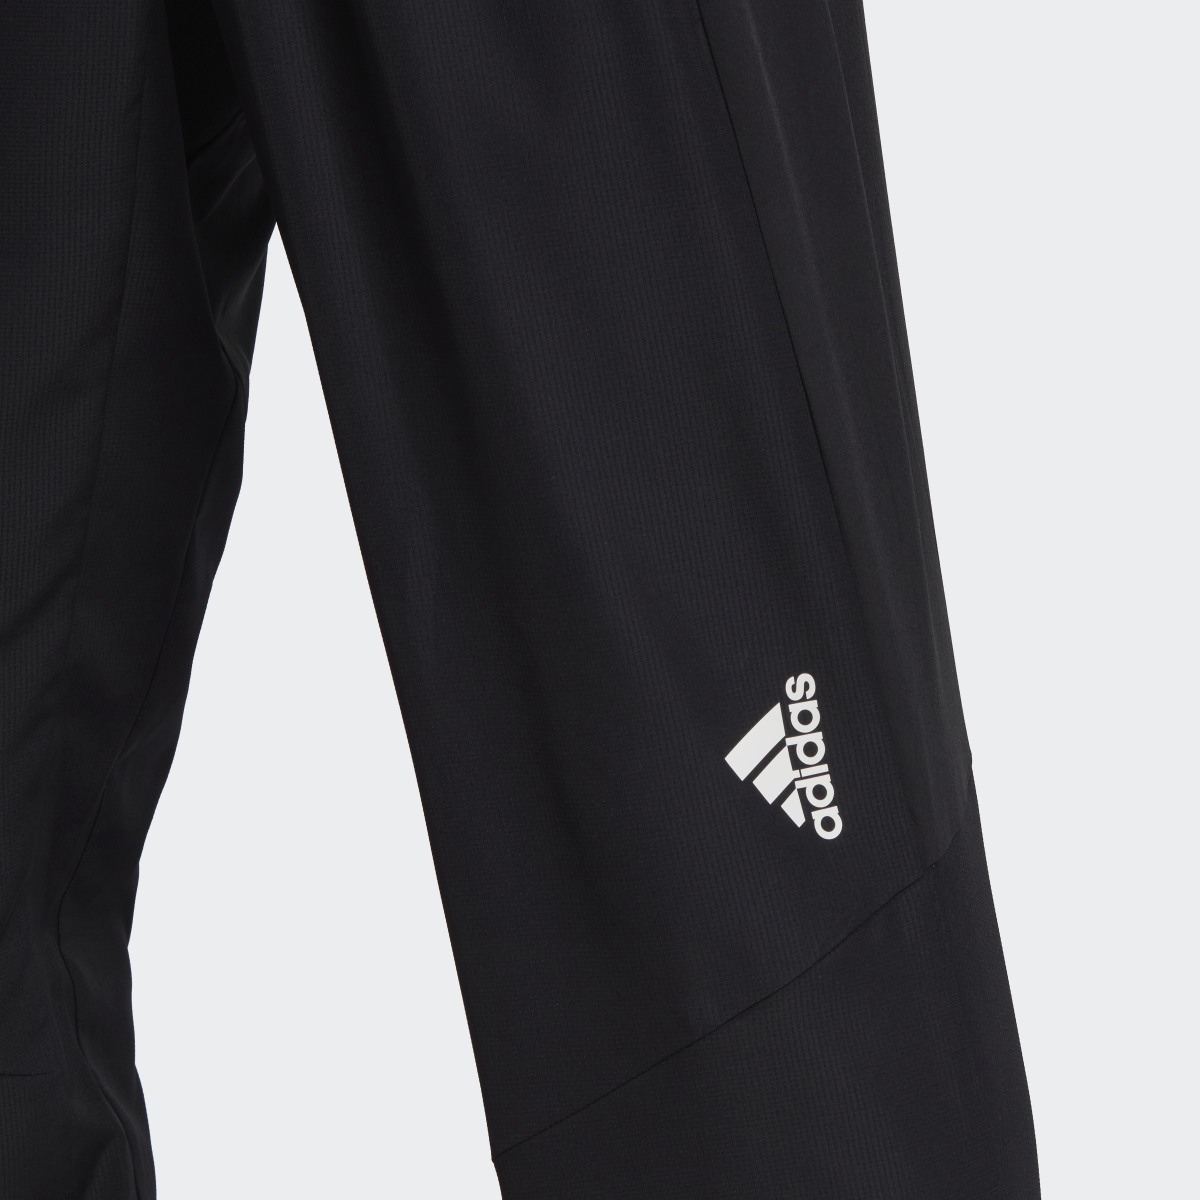 Adidas Pantaloni da allenamento AEROREADY Designed for Movement. 5